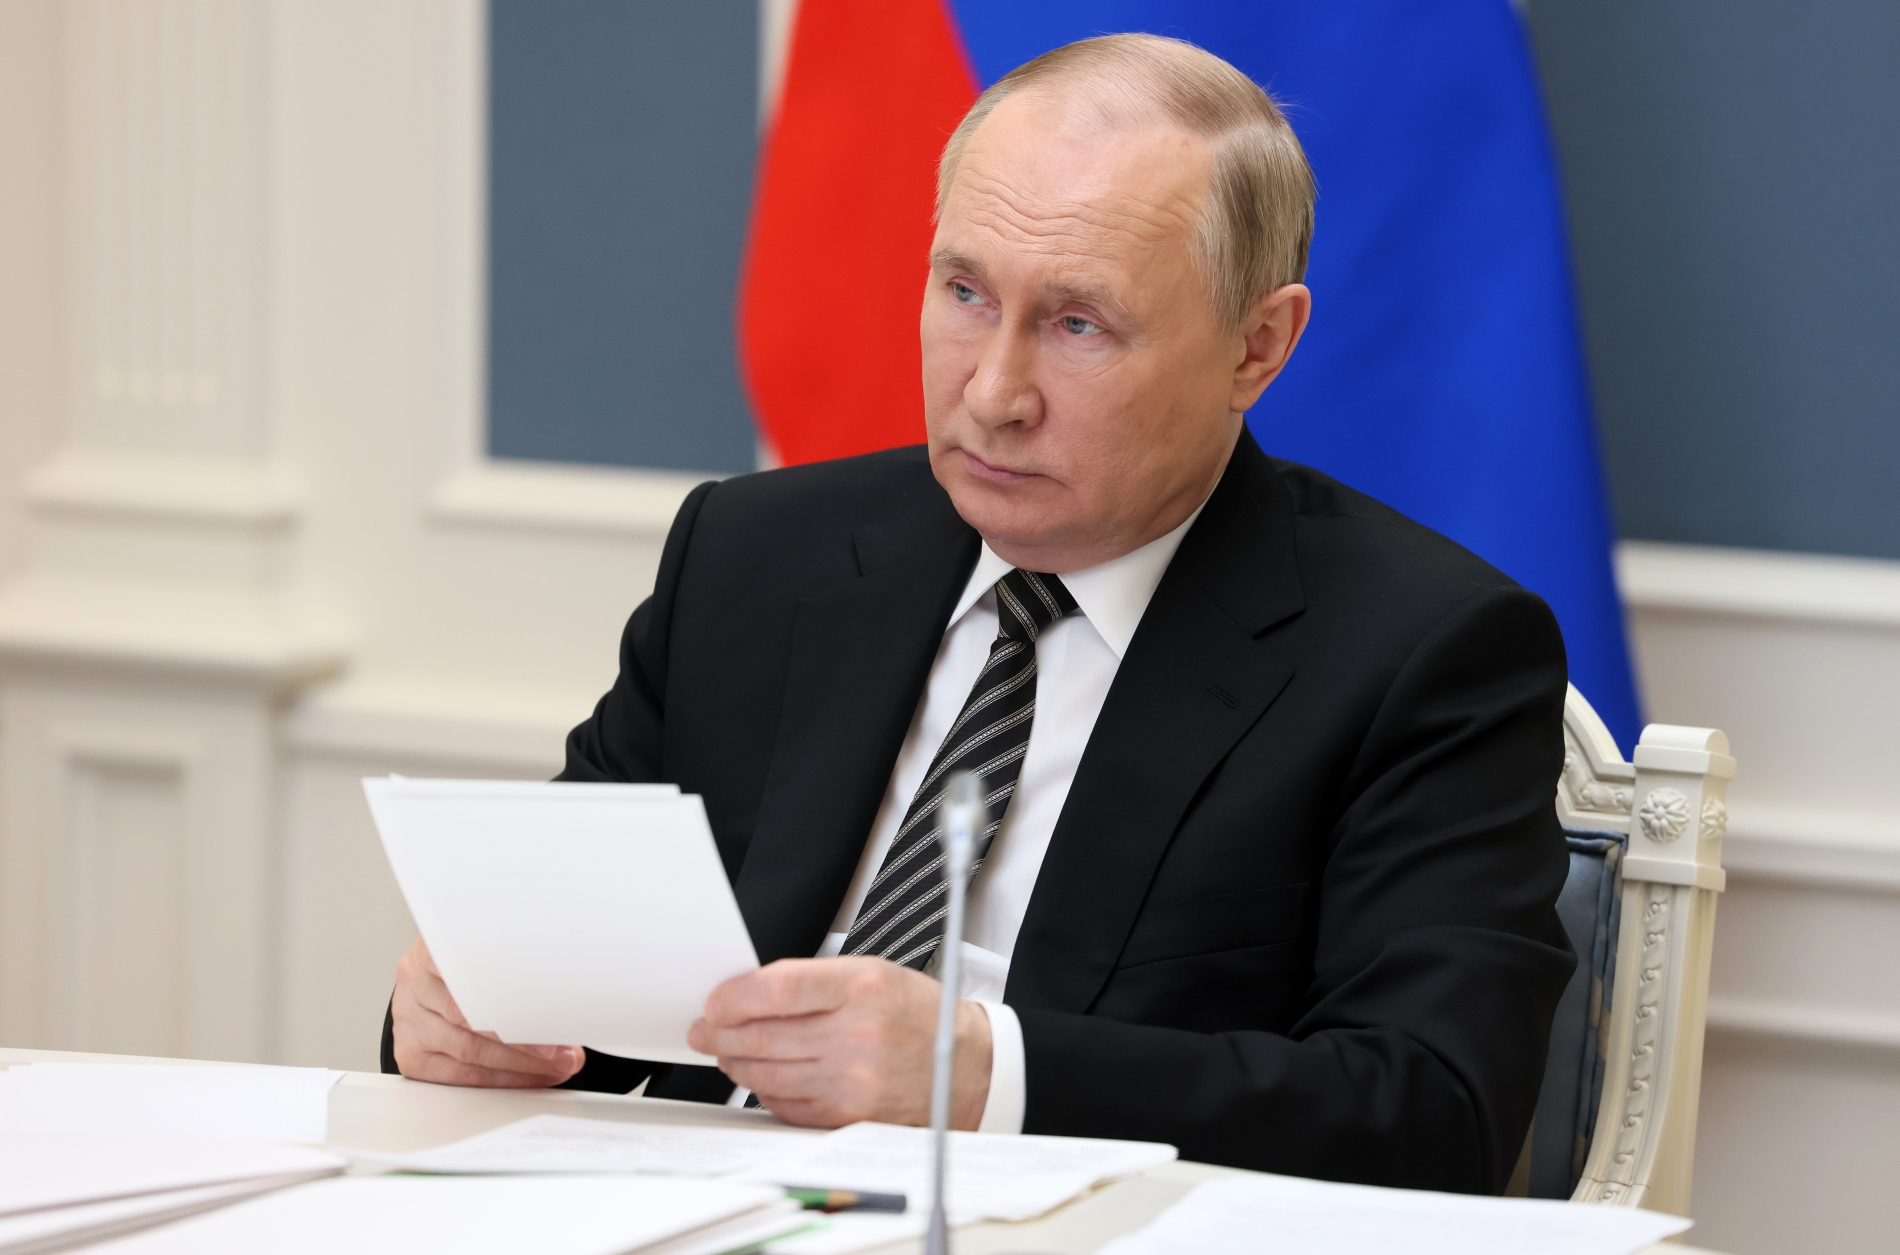 Владимир Путин: несмотря на конфронтацию со стороны Запада, интерес к ЕАЭС все равно растет